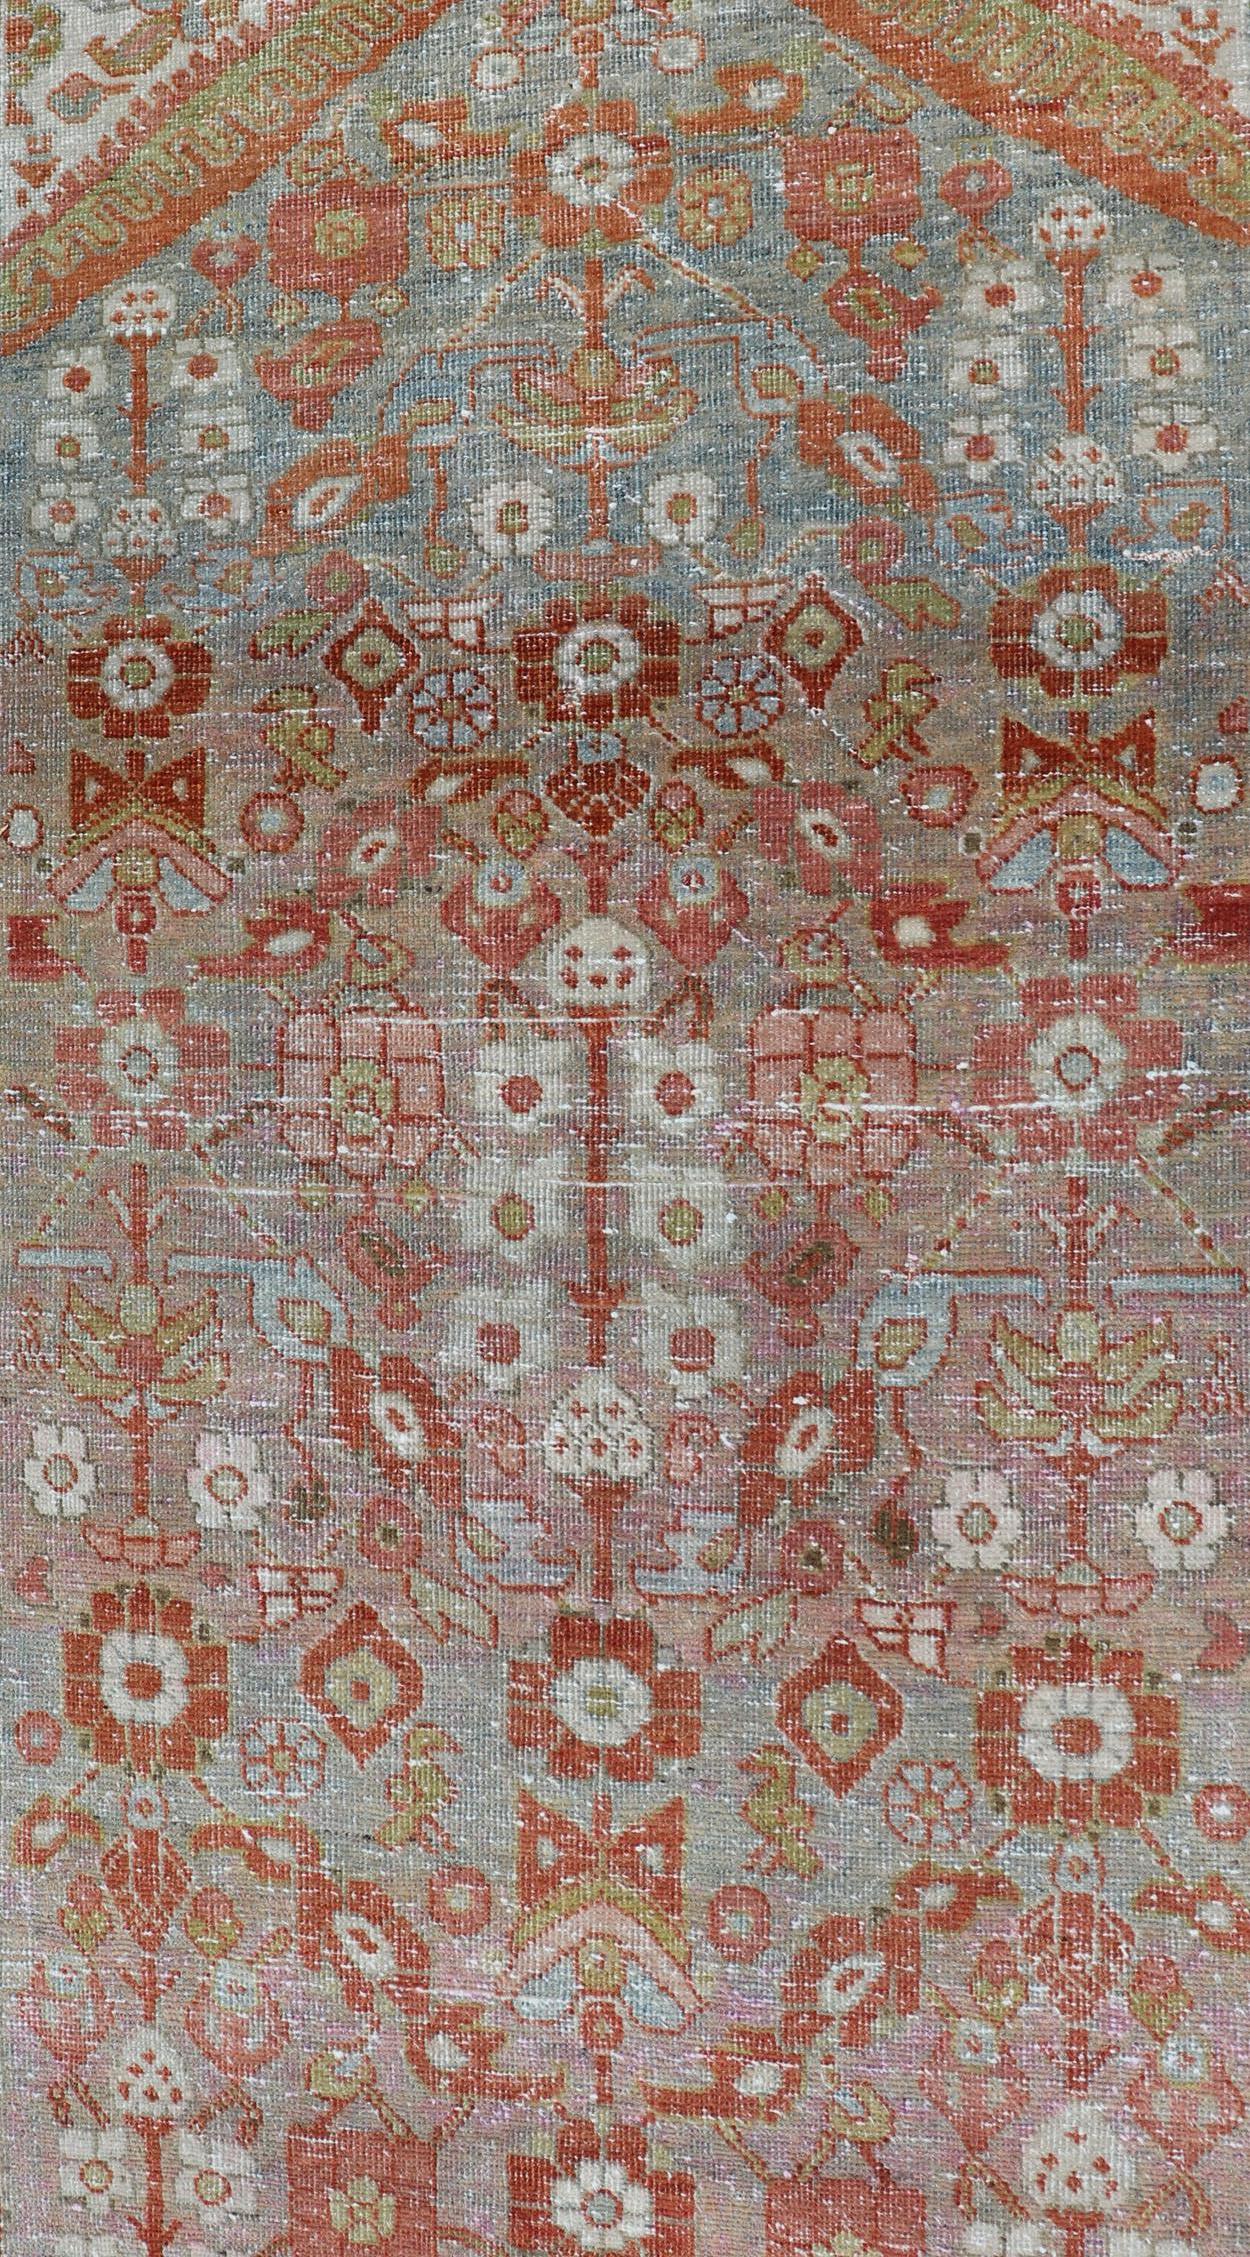 Maße 3'5 x 13'5

Dieses wunderbare persische Mahal zeichnet sich durch ein Blumenfeld und eine breite Palette von Schattierungen und Farben aus. Die Umrandung ist in Rot und Olivgrün gehalten. Das Feld ist mit Blumendekorationen in den Farben